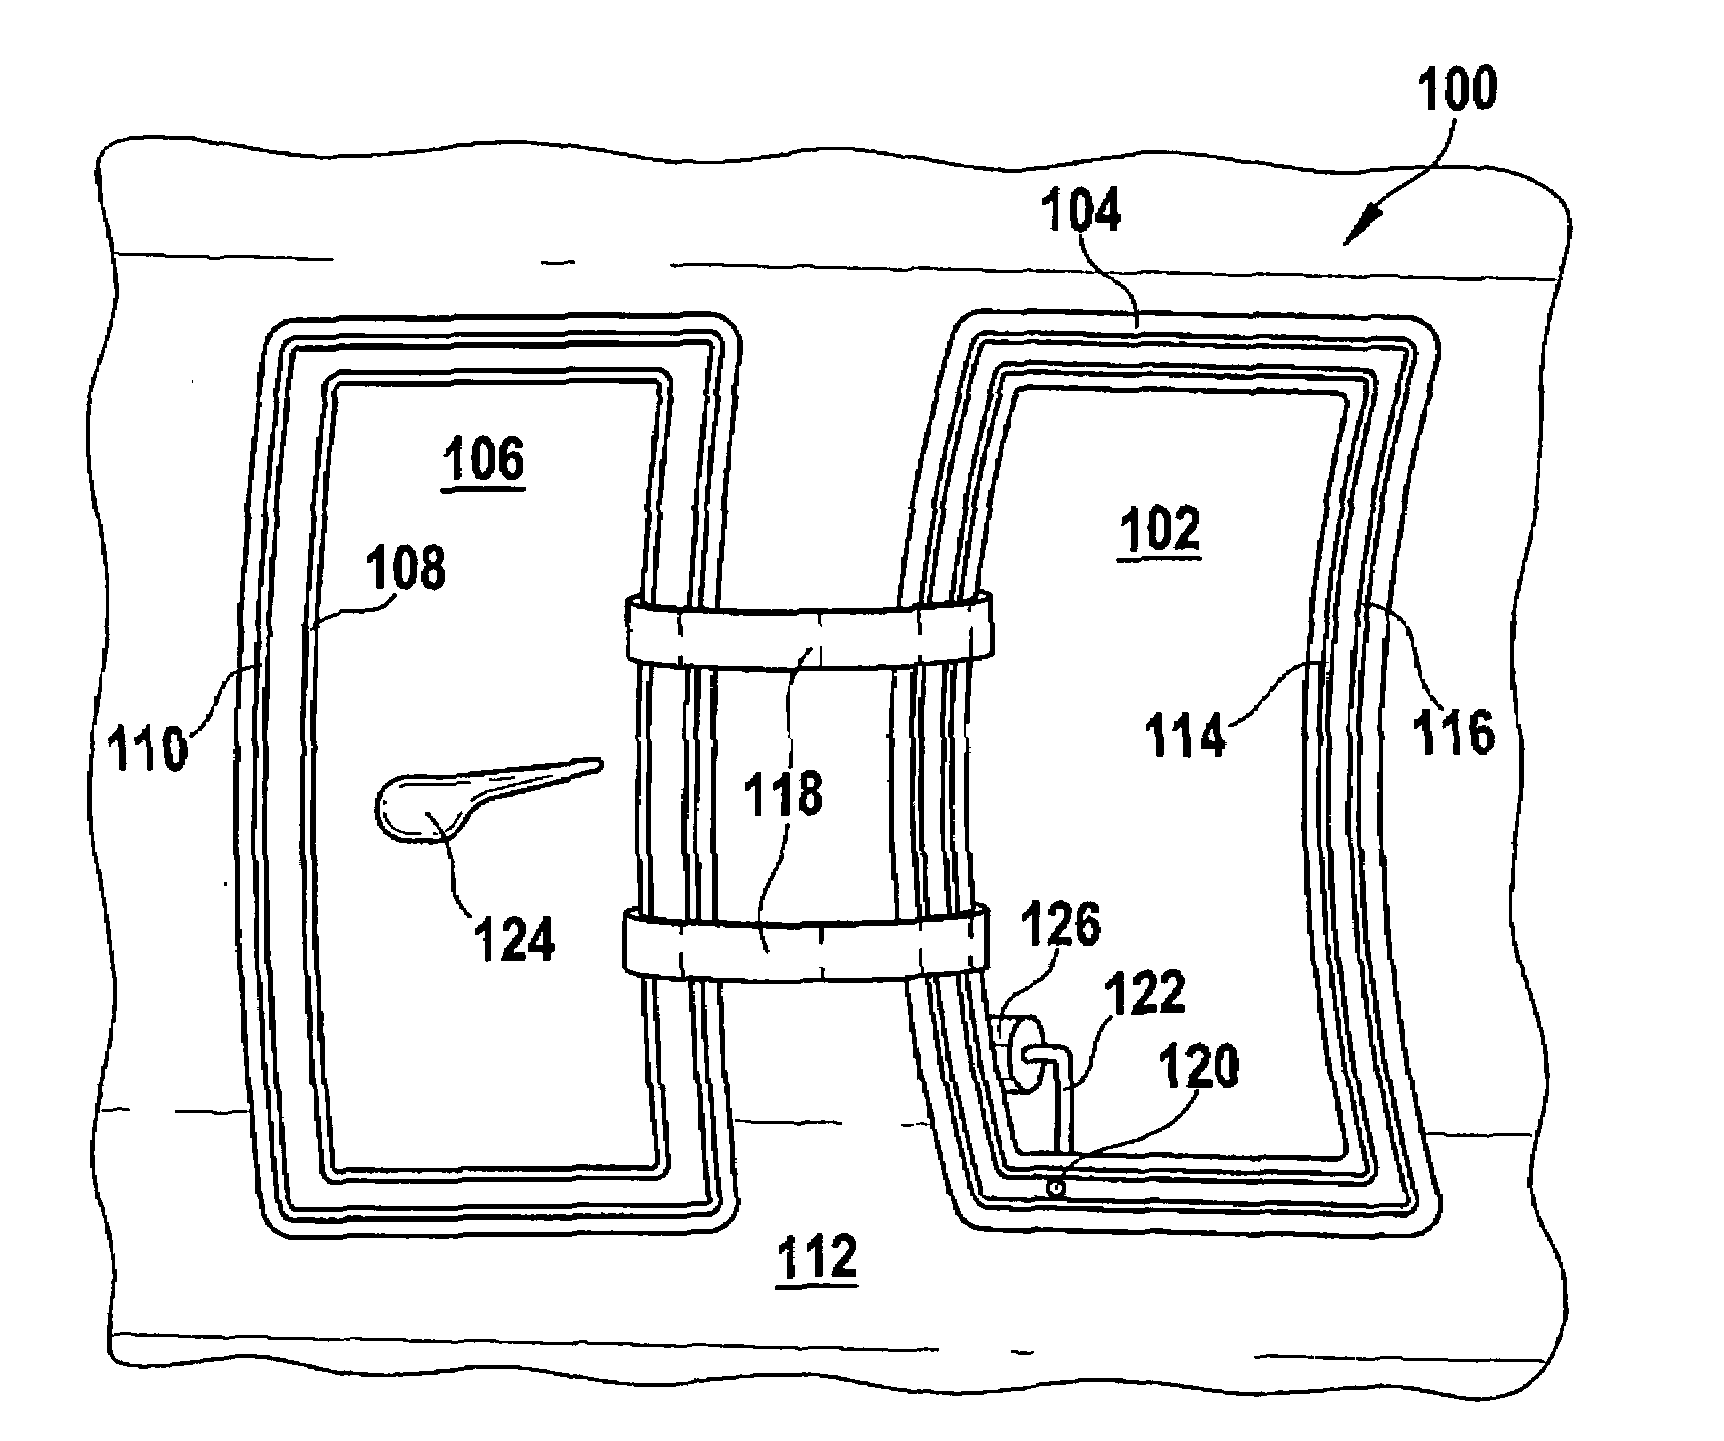 Door arrangement and aircraft